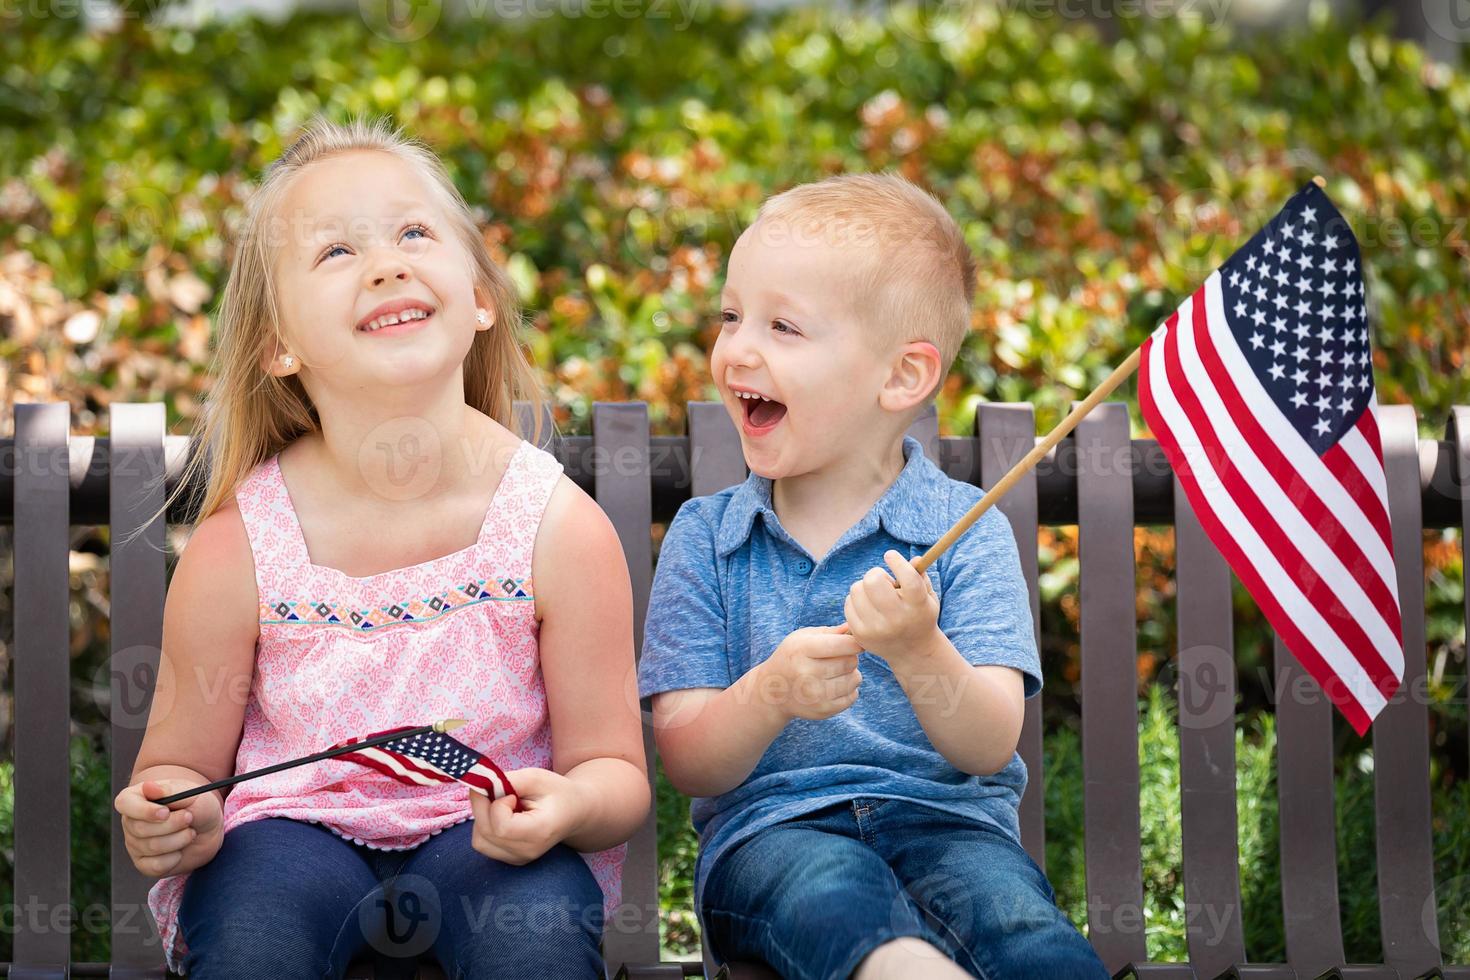 junge schwester und bruder vergleichen sich gegenseitig die größe der amerikanischen flagge auf der bank im park foto